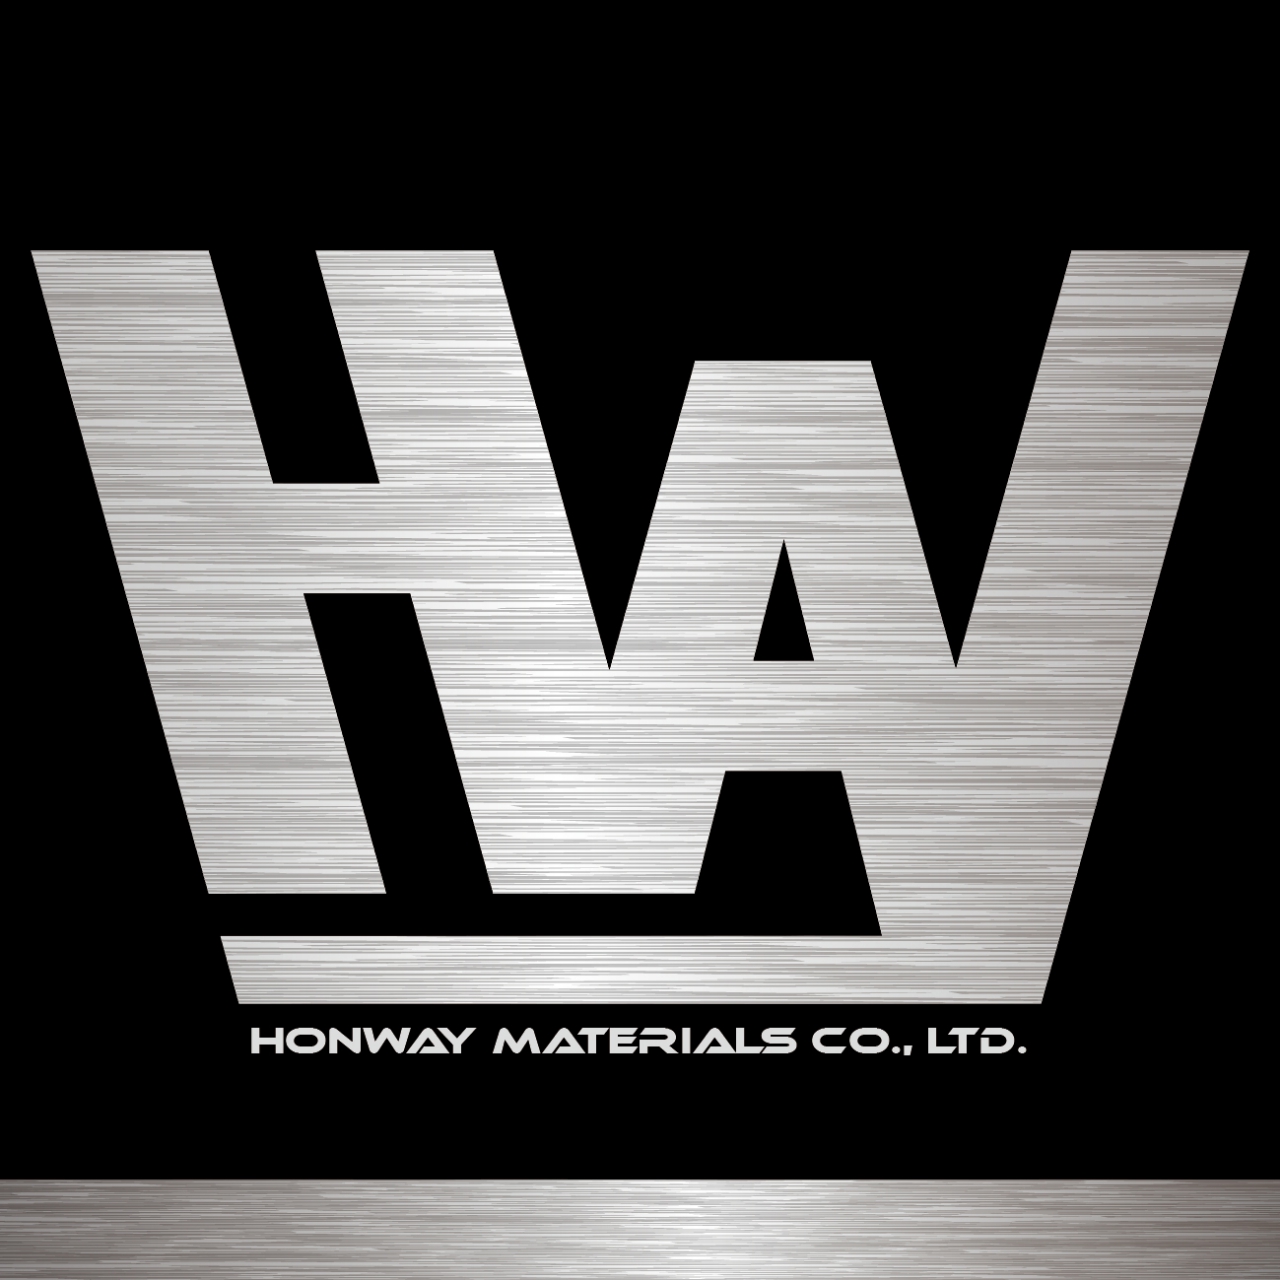 Honway Materials Co., Ltd.